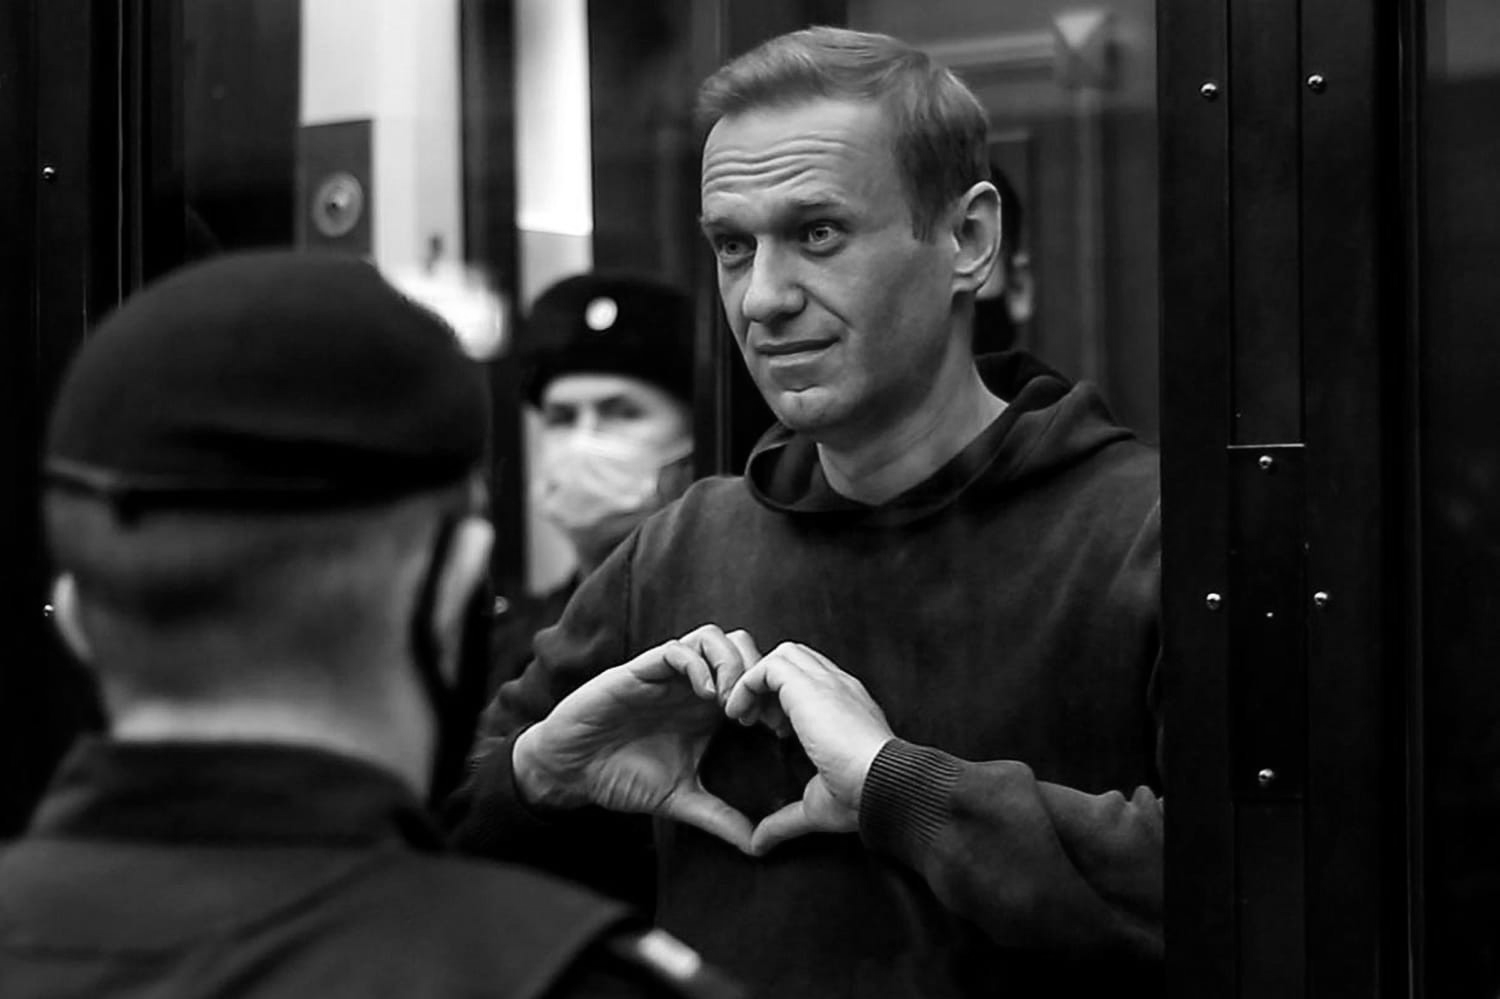 Vụ ông Navalny tử vong: Bất chấp việc Nga đang điều tra, Mỹ nói sẽ trừng phạt lớn, Anh 'nhanh chân'